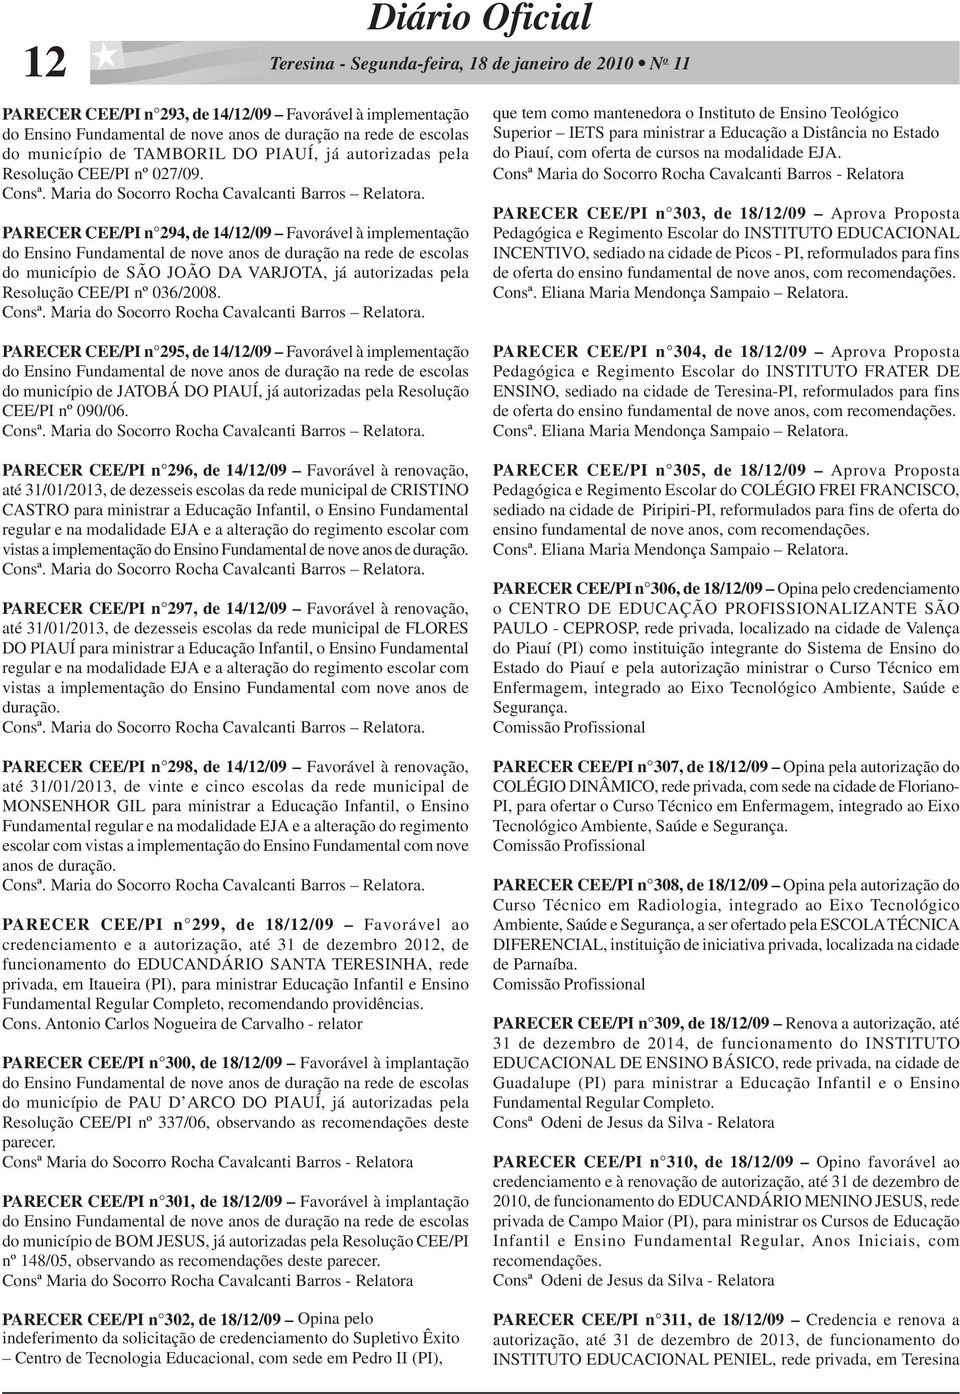 PARECER CEE/PI n 295, de 14/12/09 Favorável à implementação do município de JATOBÁ DO PIAUÍ, já autorizadas pela Resolução CEE/PI nº 090/06.